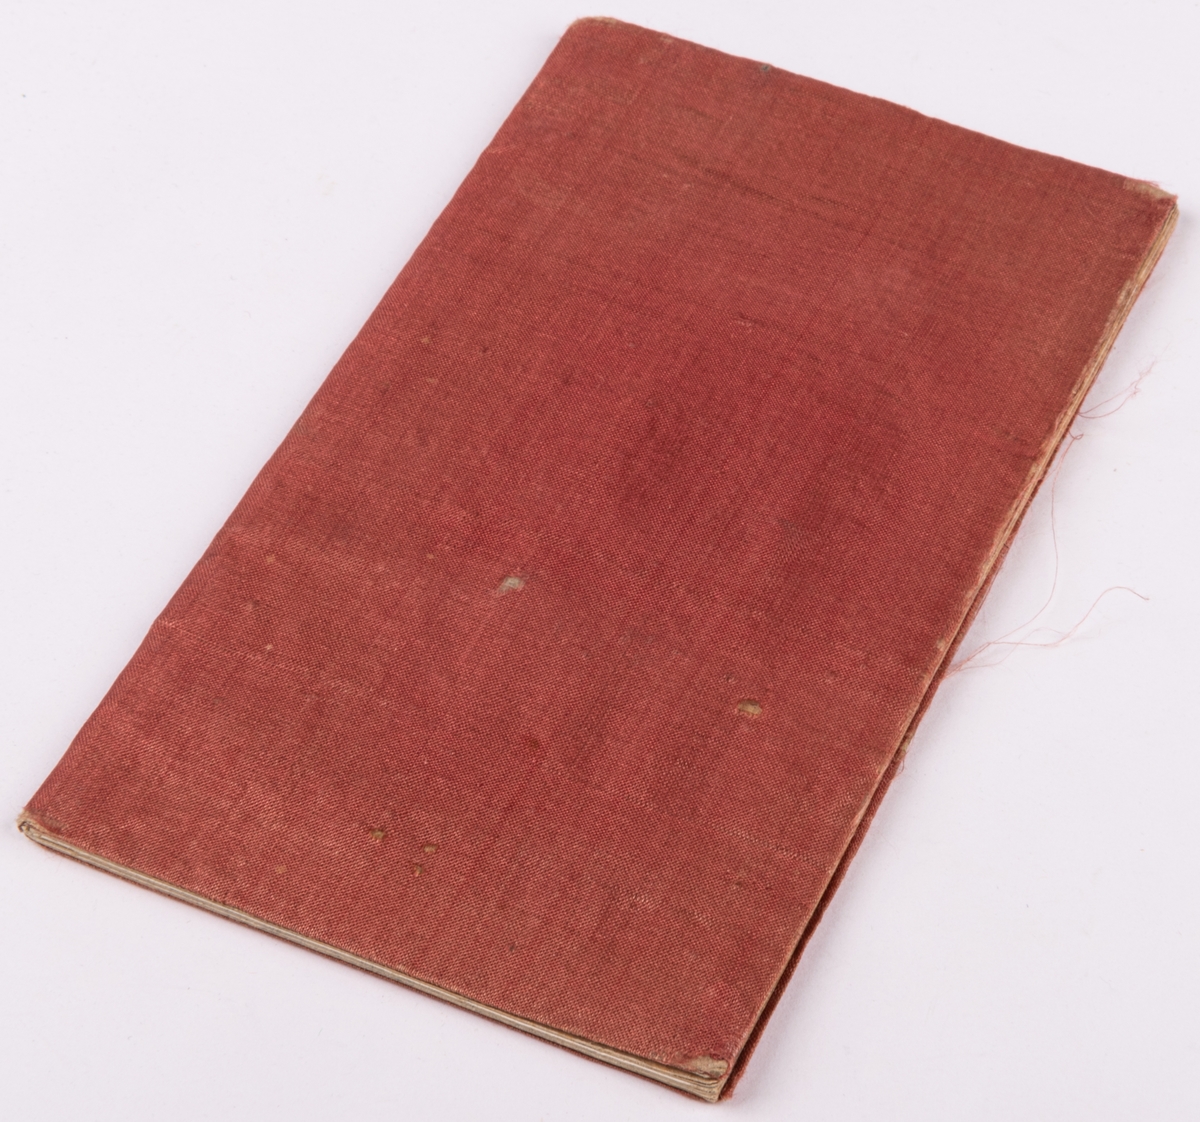 Anteckningsbok klädd med rött siden.
Inuti skrivet

"Från Clara Nordblad julafton 1848".